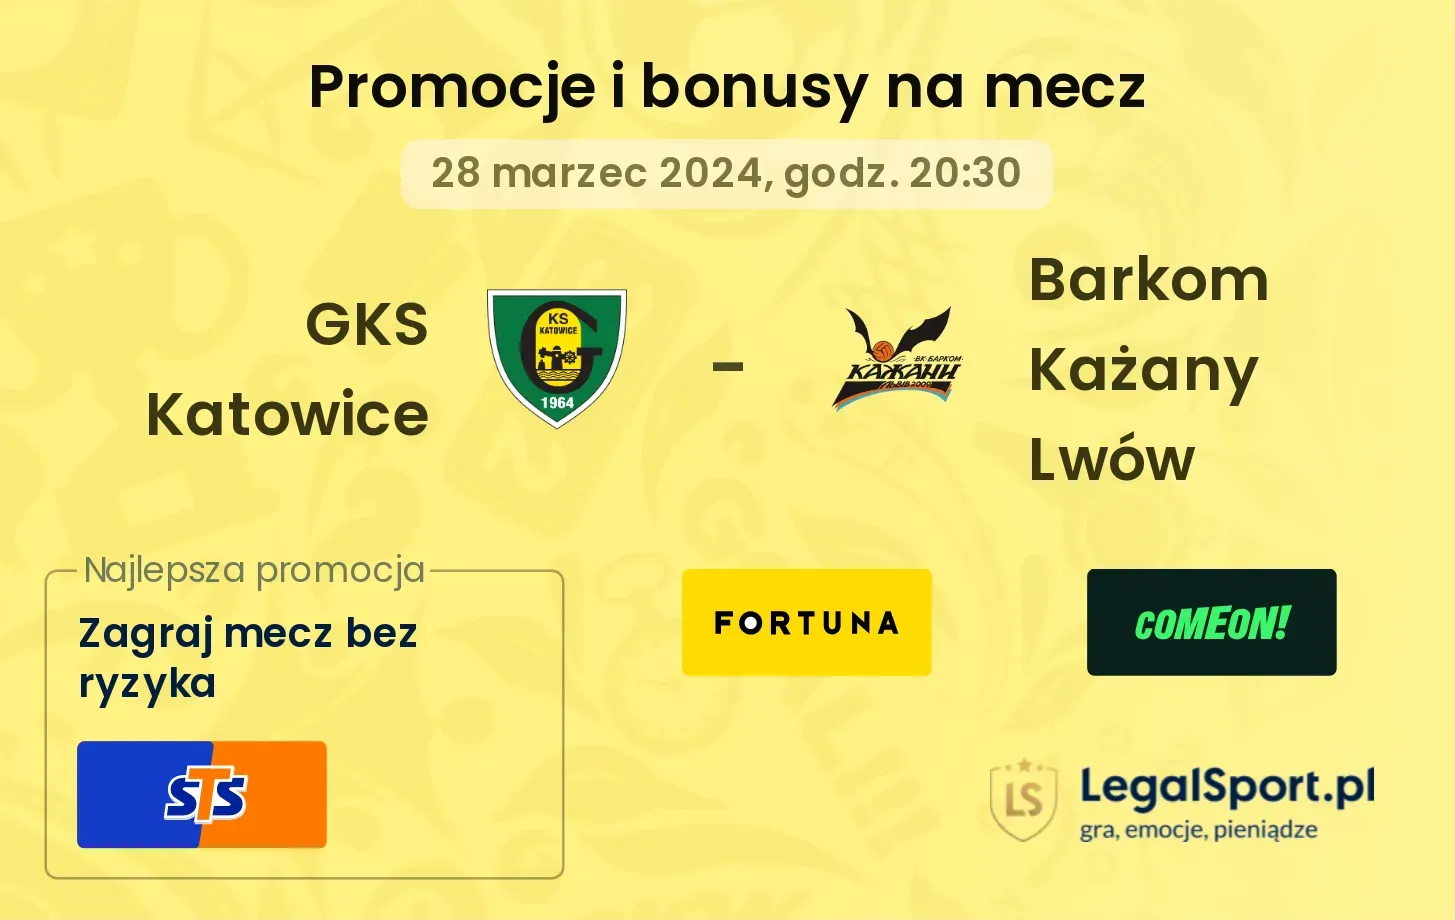 GKS Katowice - Barkom Każany Lwów promocje bonusy na mecz